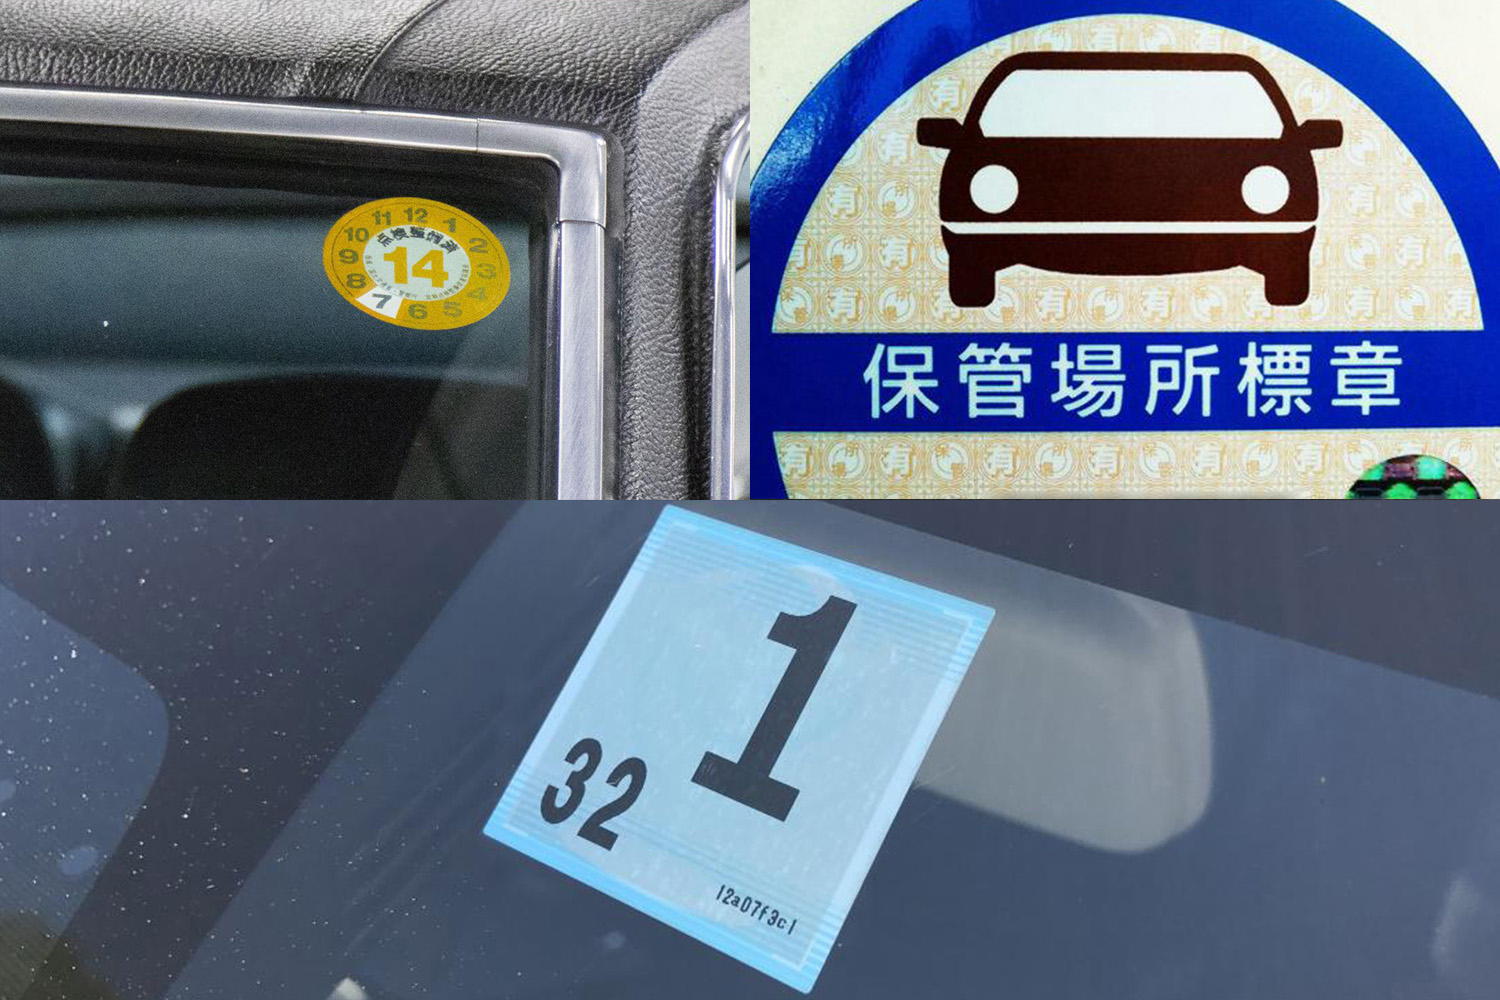 保管場所標章を貼ってないクルマはあり クルマの公的なステッカー３つの貼付義務について解説 自動車情報 ニュース Web Cartop